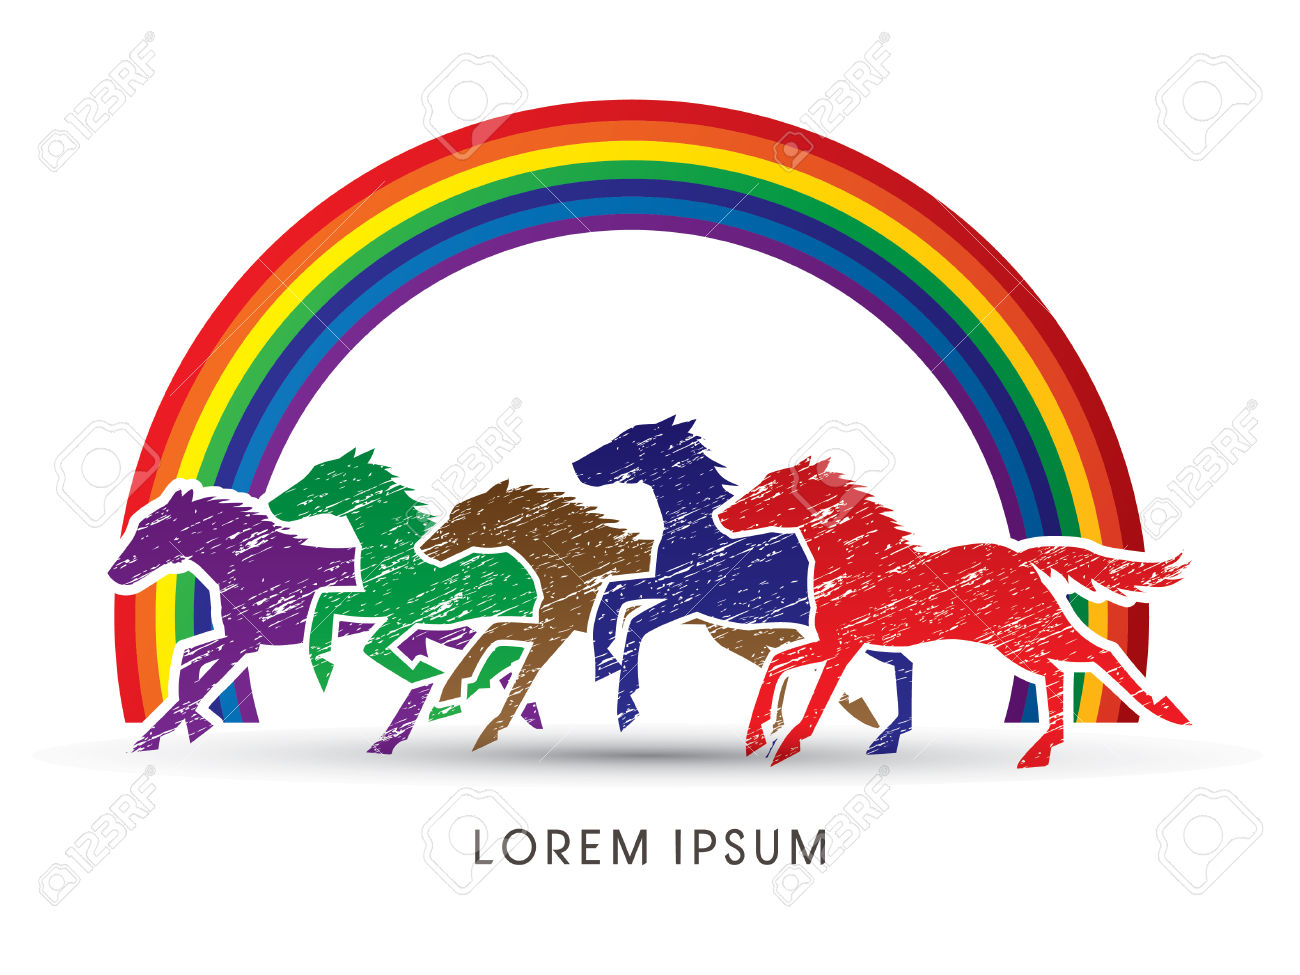 5 Cavalli In Esecuzione, Progettato Utilizzando Colore Colorato Su.